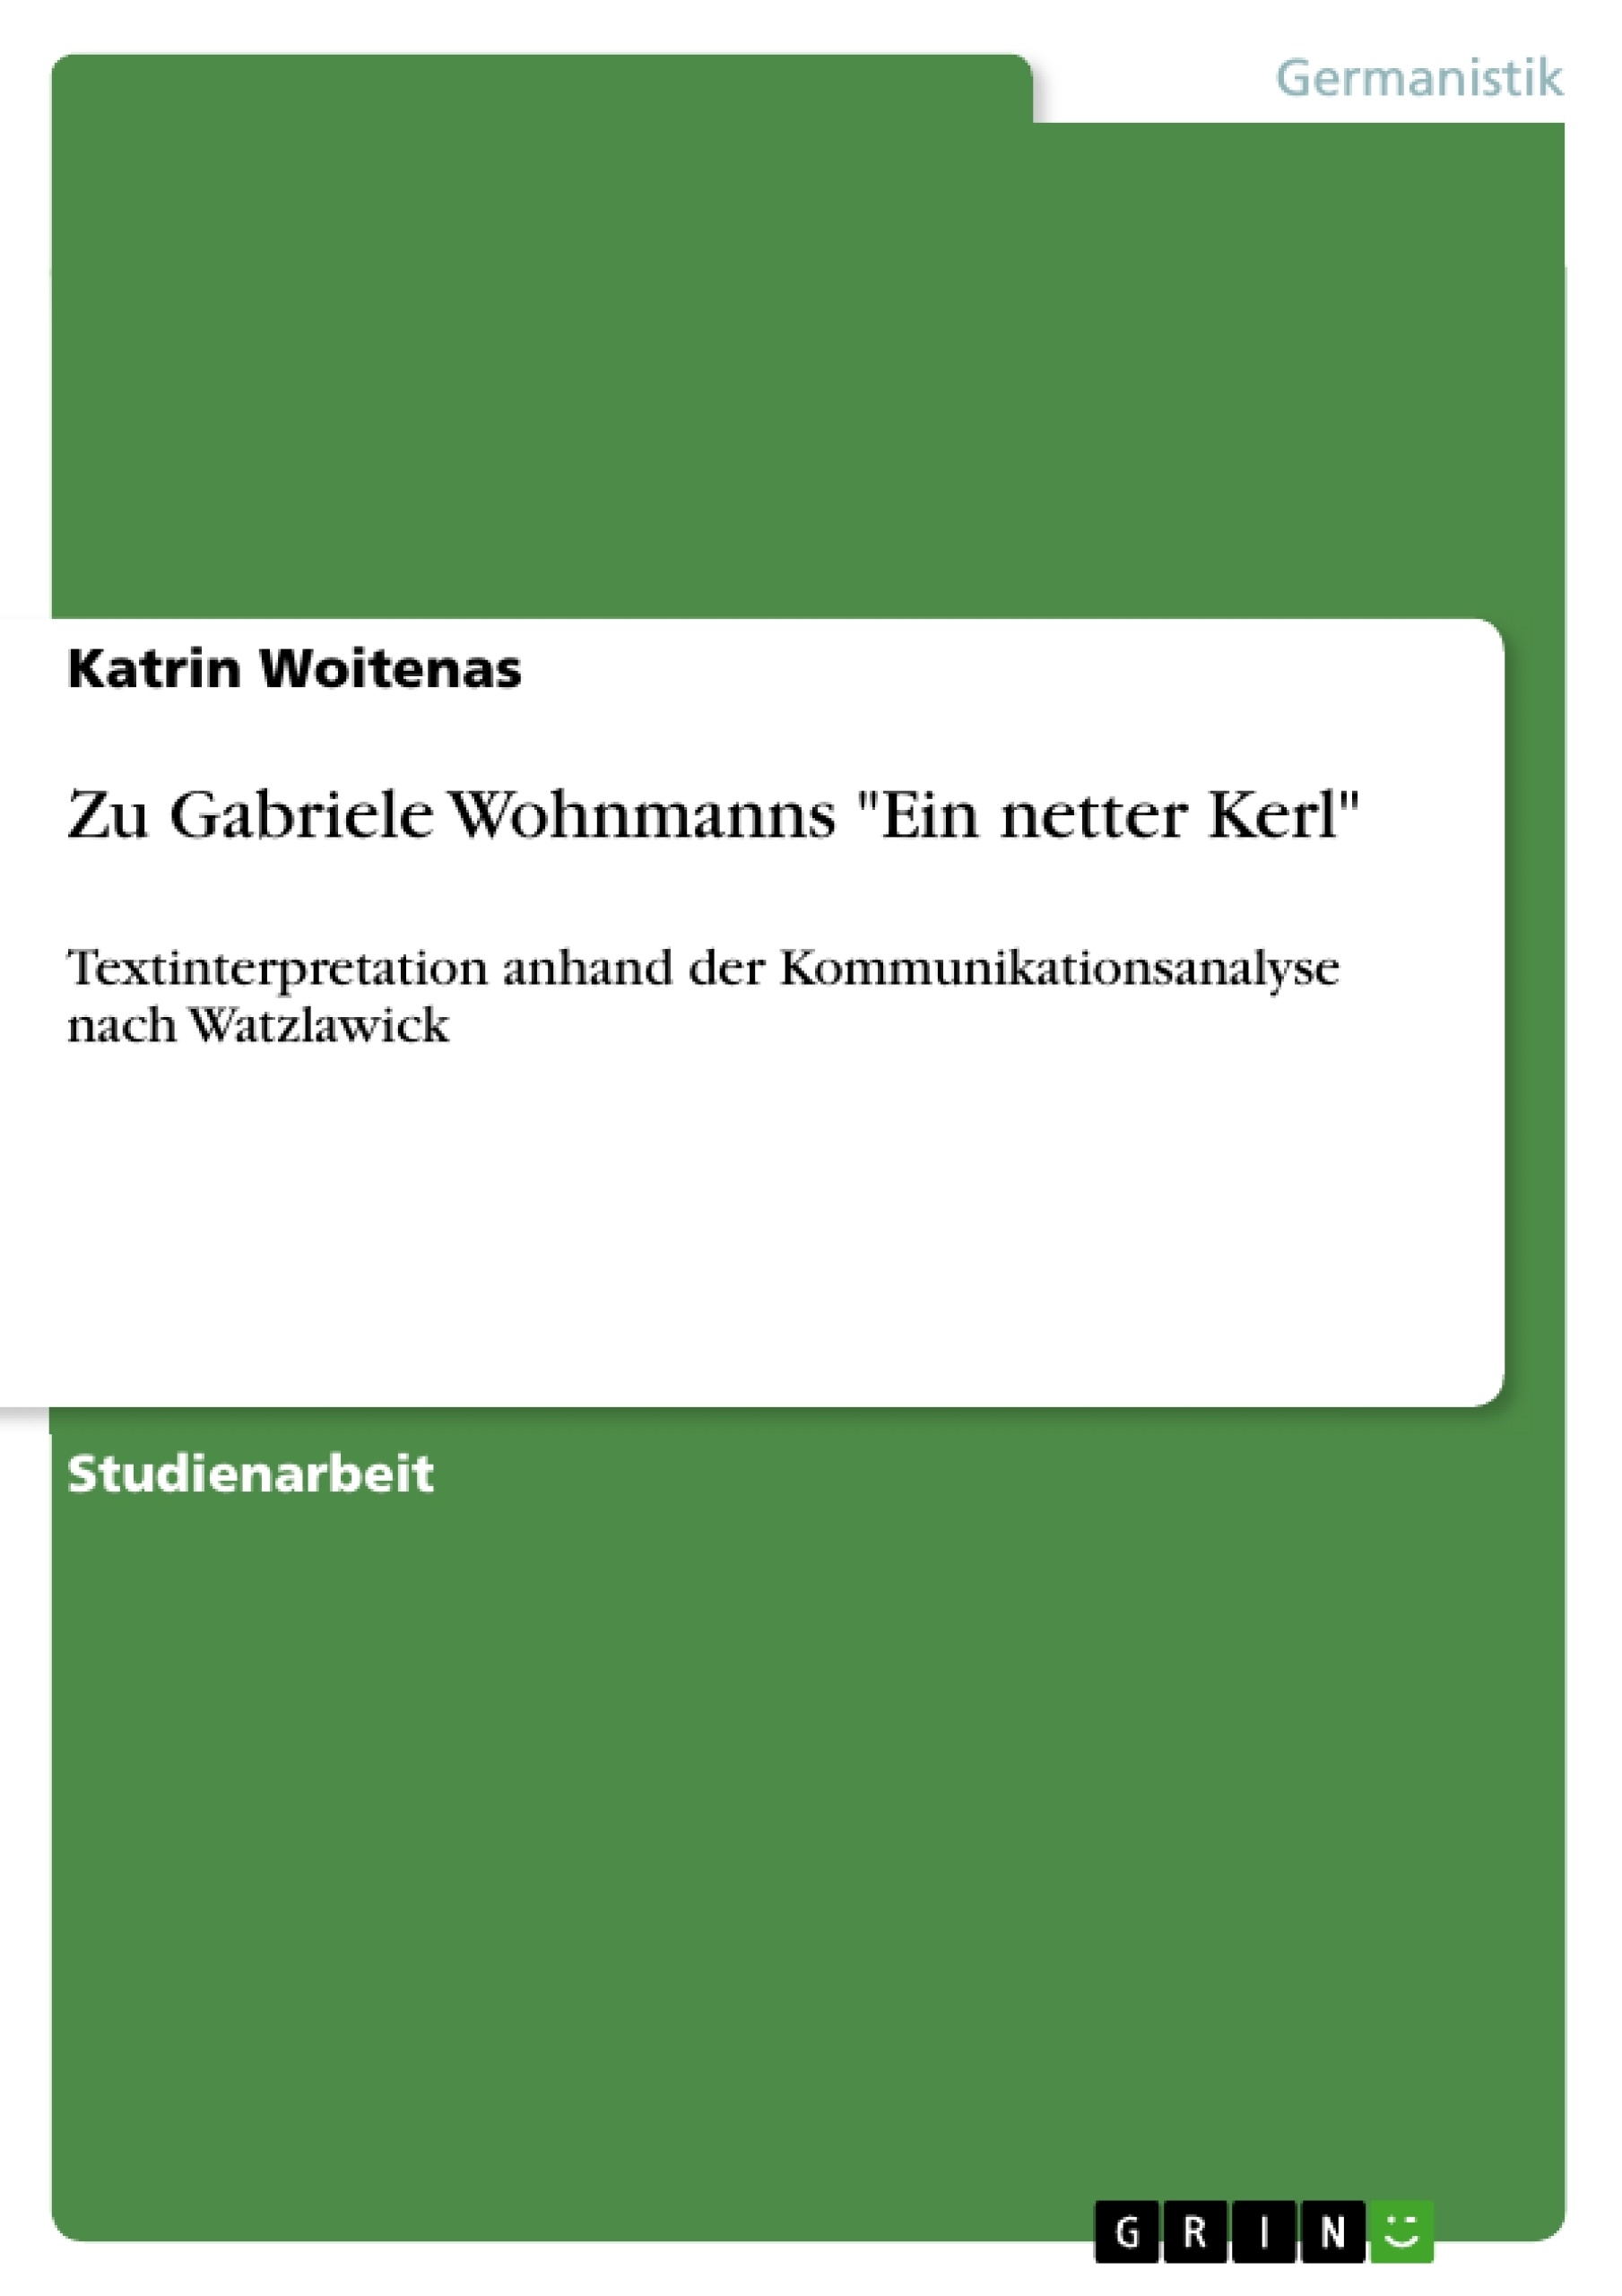 Titre: Zu Gabriele Wohnmanns "Ein netter Kerl"